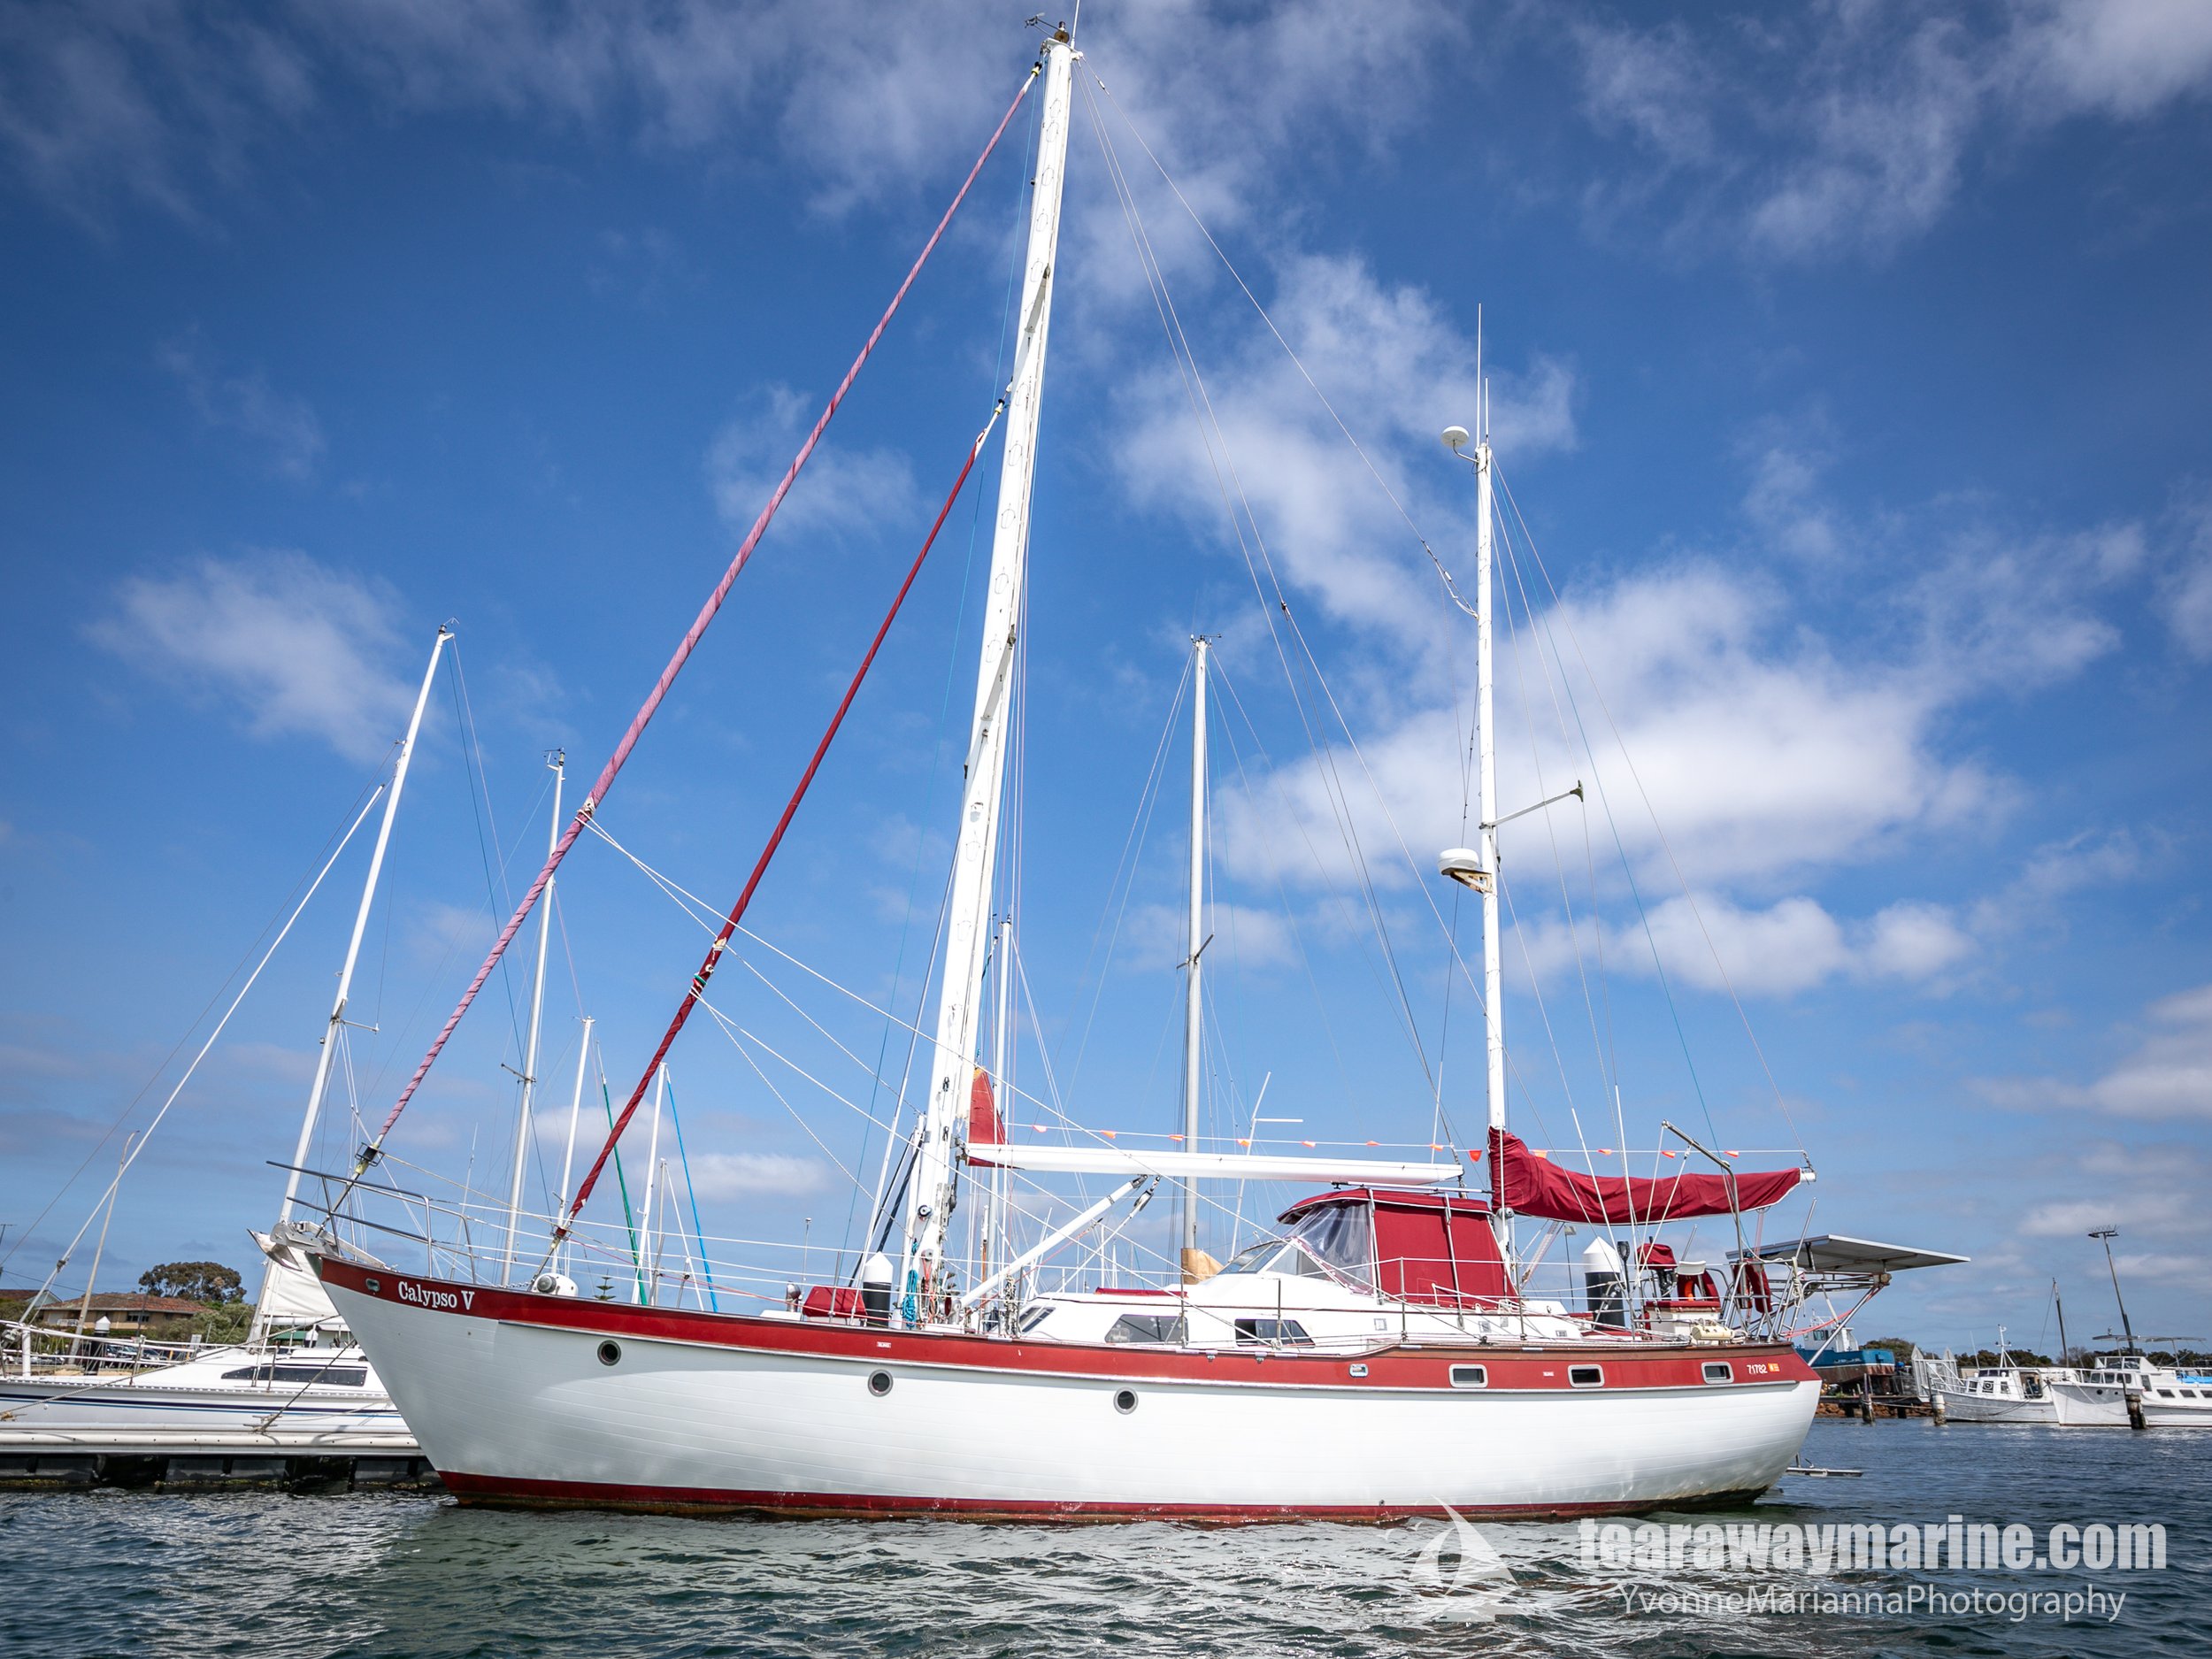 Calypso Yacht Tearaway Marine - Yvonne Marianna Photography-32.jpg